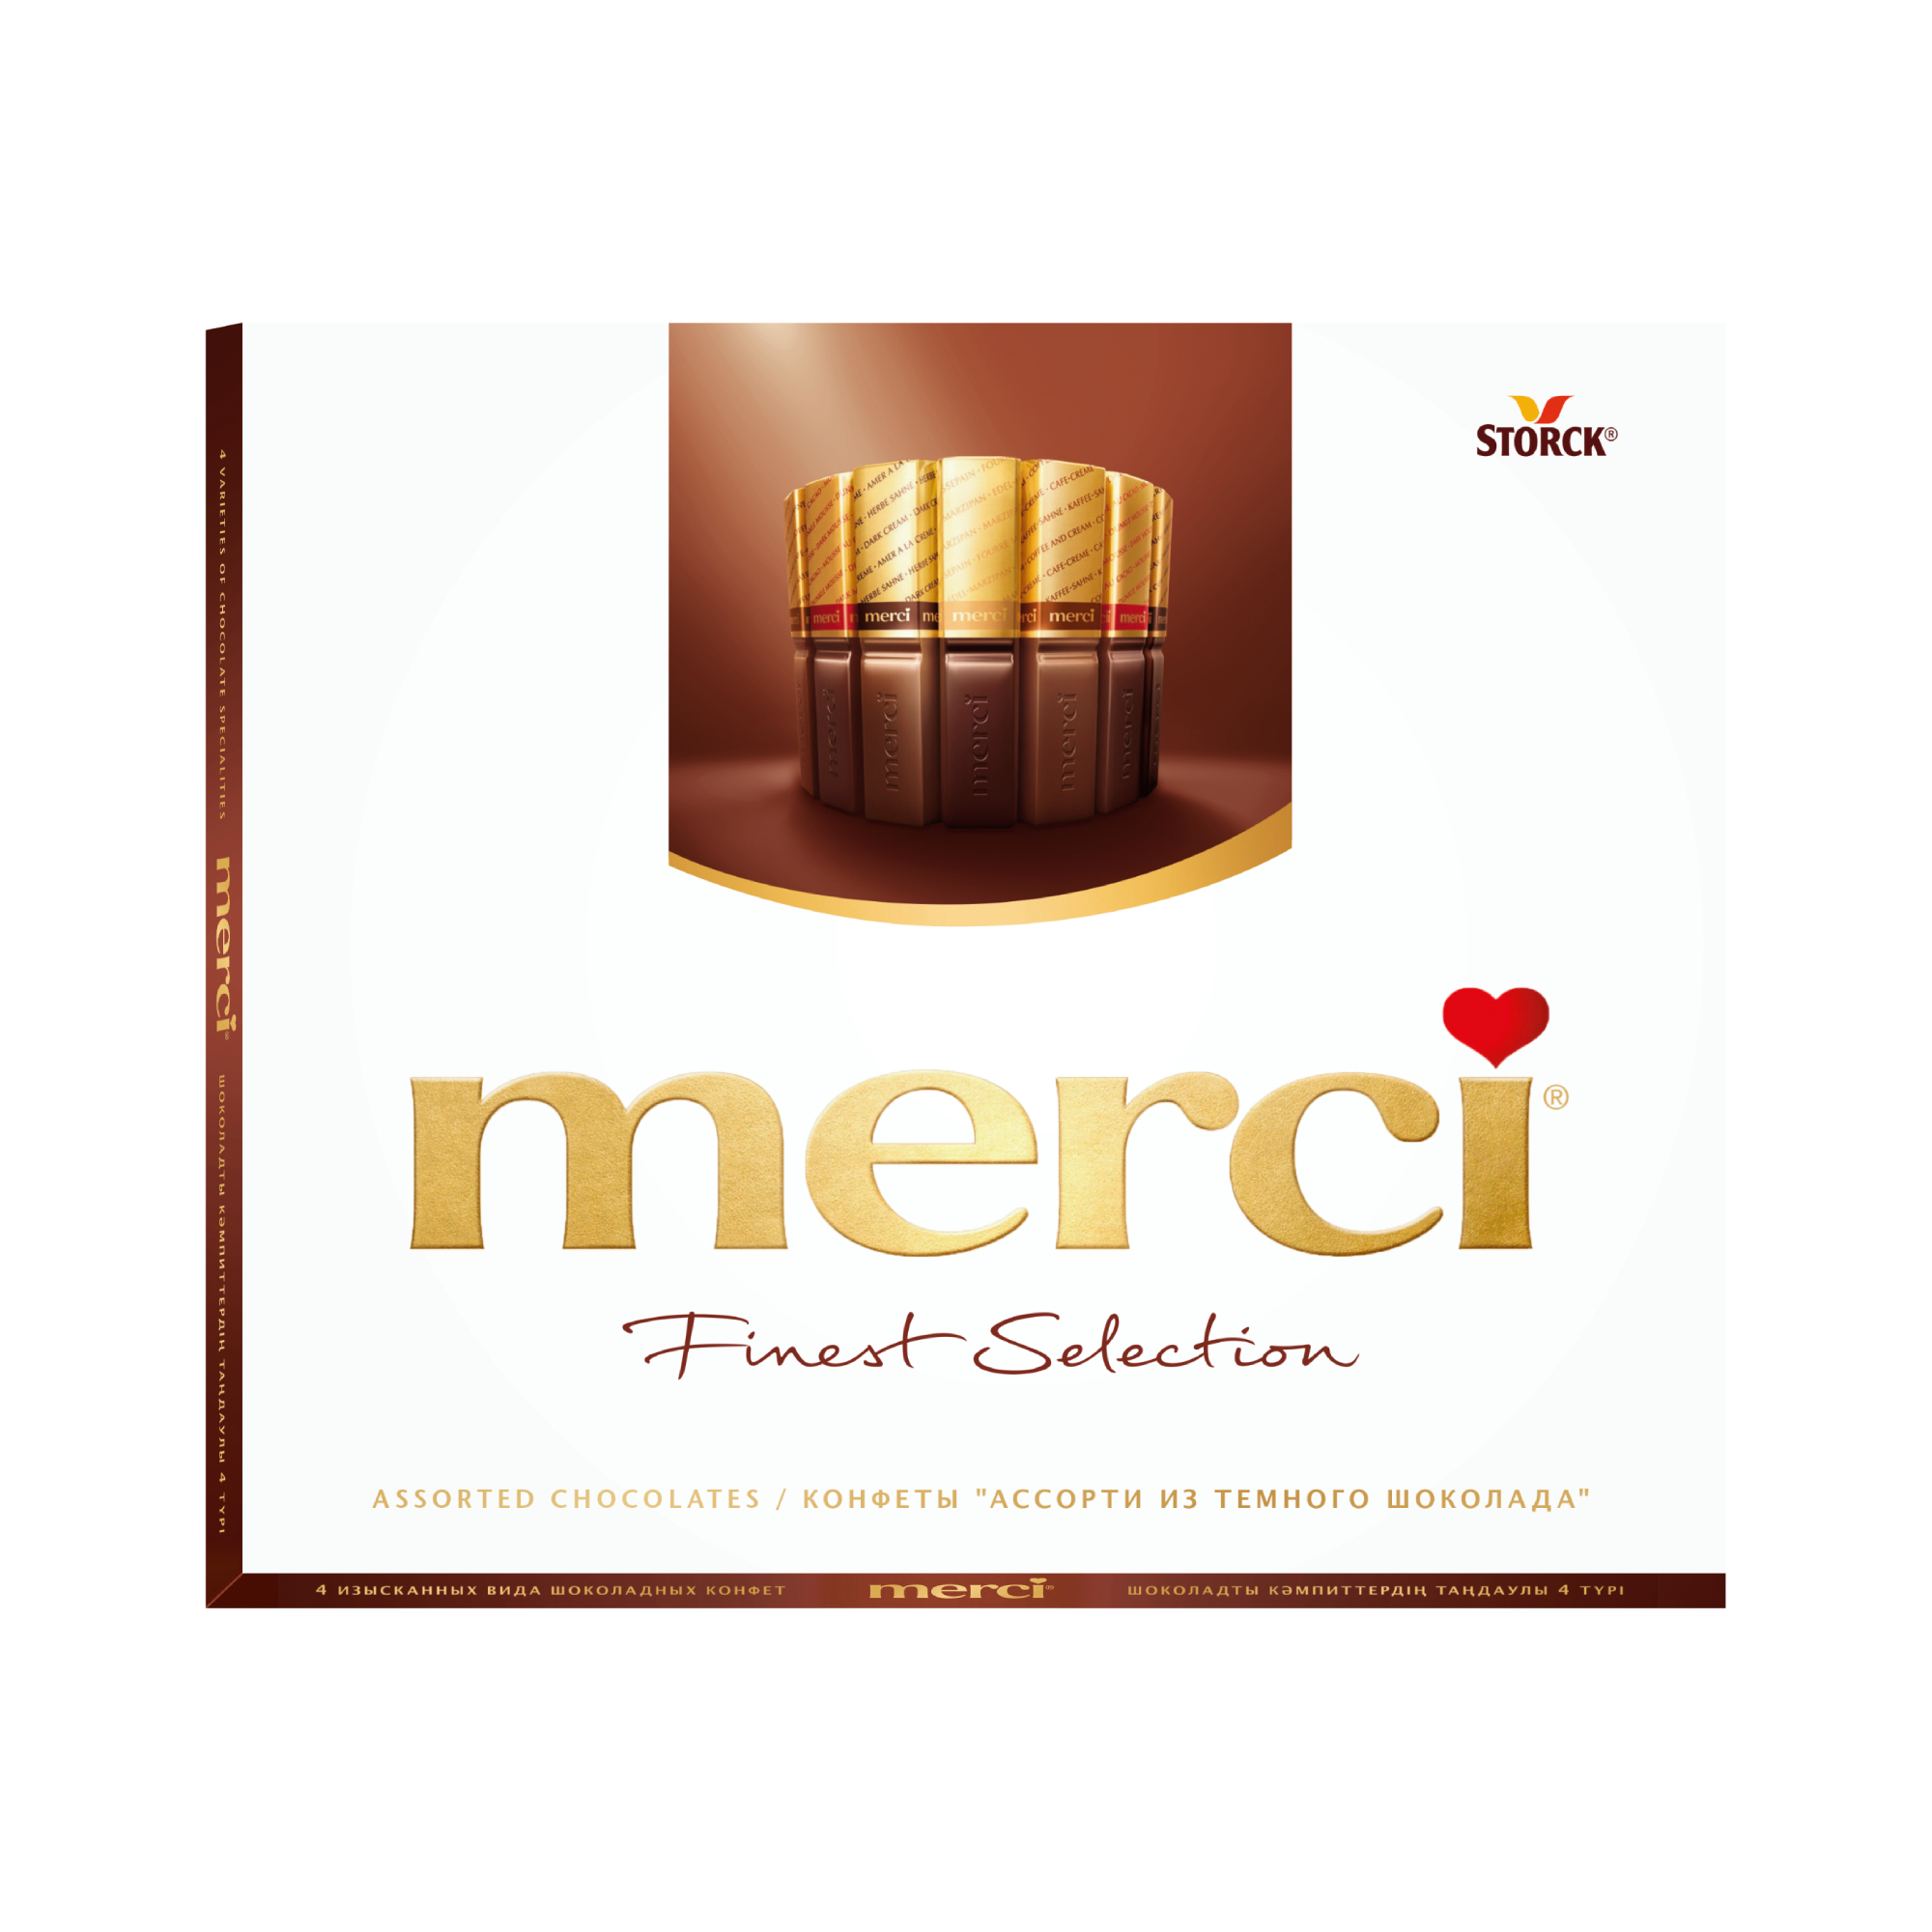 Шоколадный набор Storck Merci Ассорти 4 вида с начинкой из шоколадного мусса 210 г mozart kugel reber подарочный набор с молочным шоколадом 120 г 1410111 5